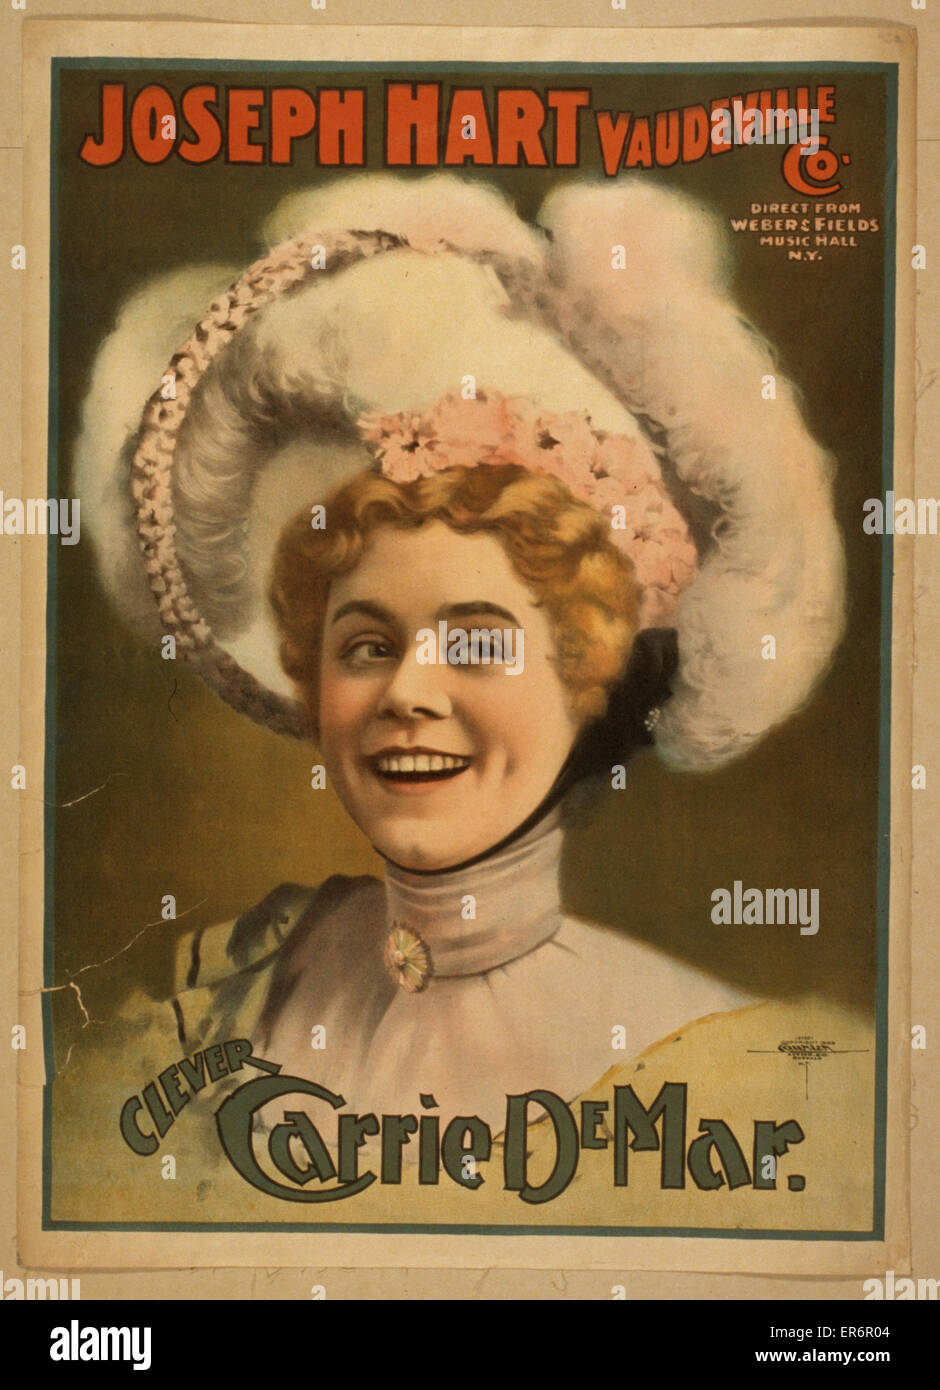 Joseph Hart Vaudeville Co. Diretta da Weber & Fields Music Foto Stock